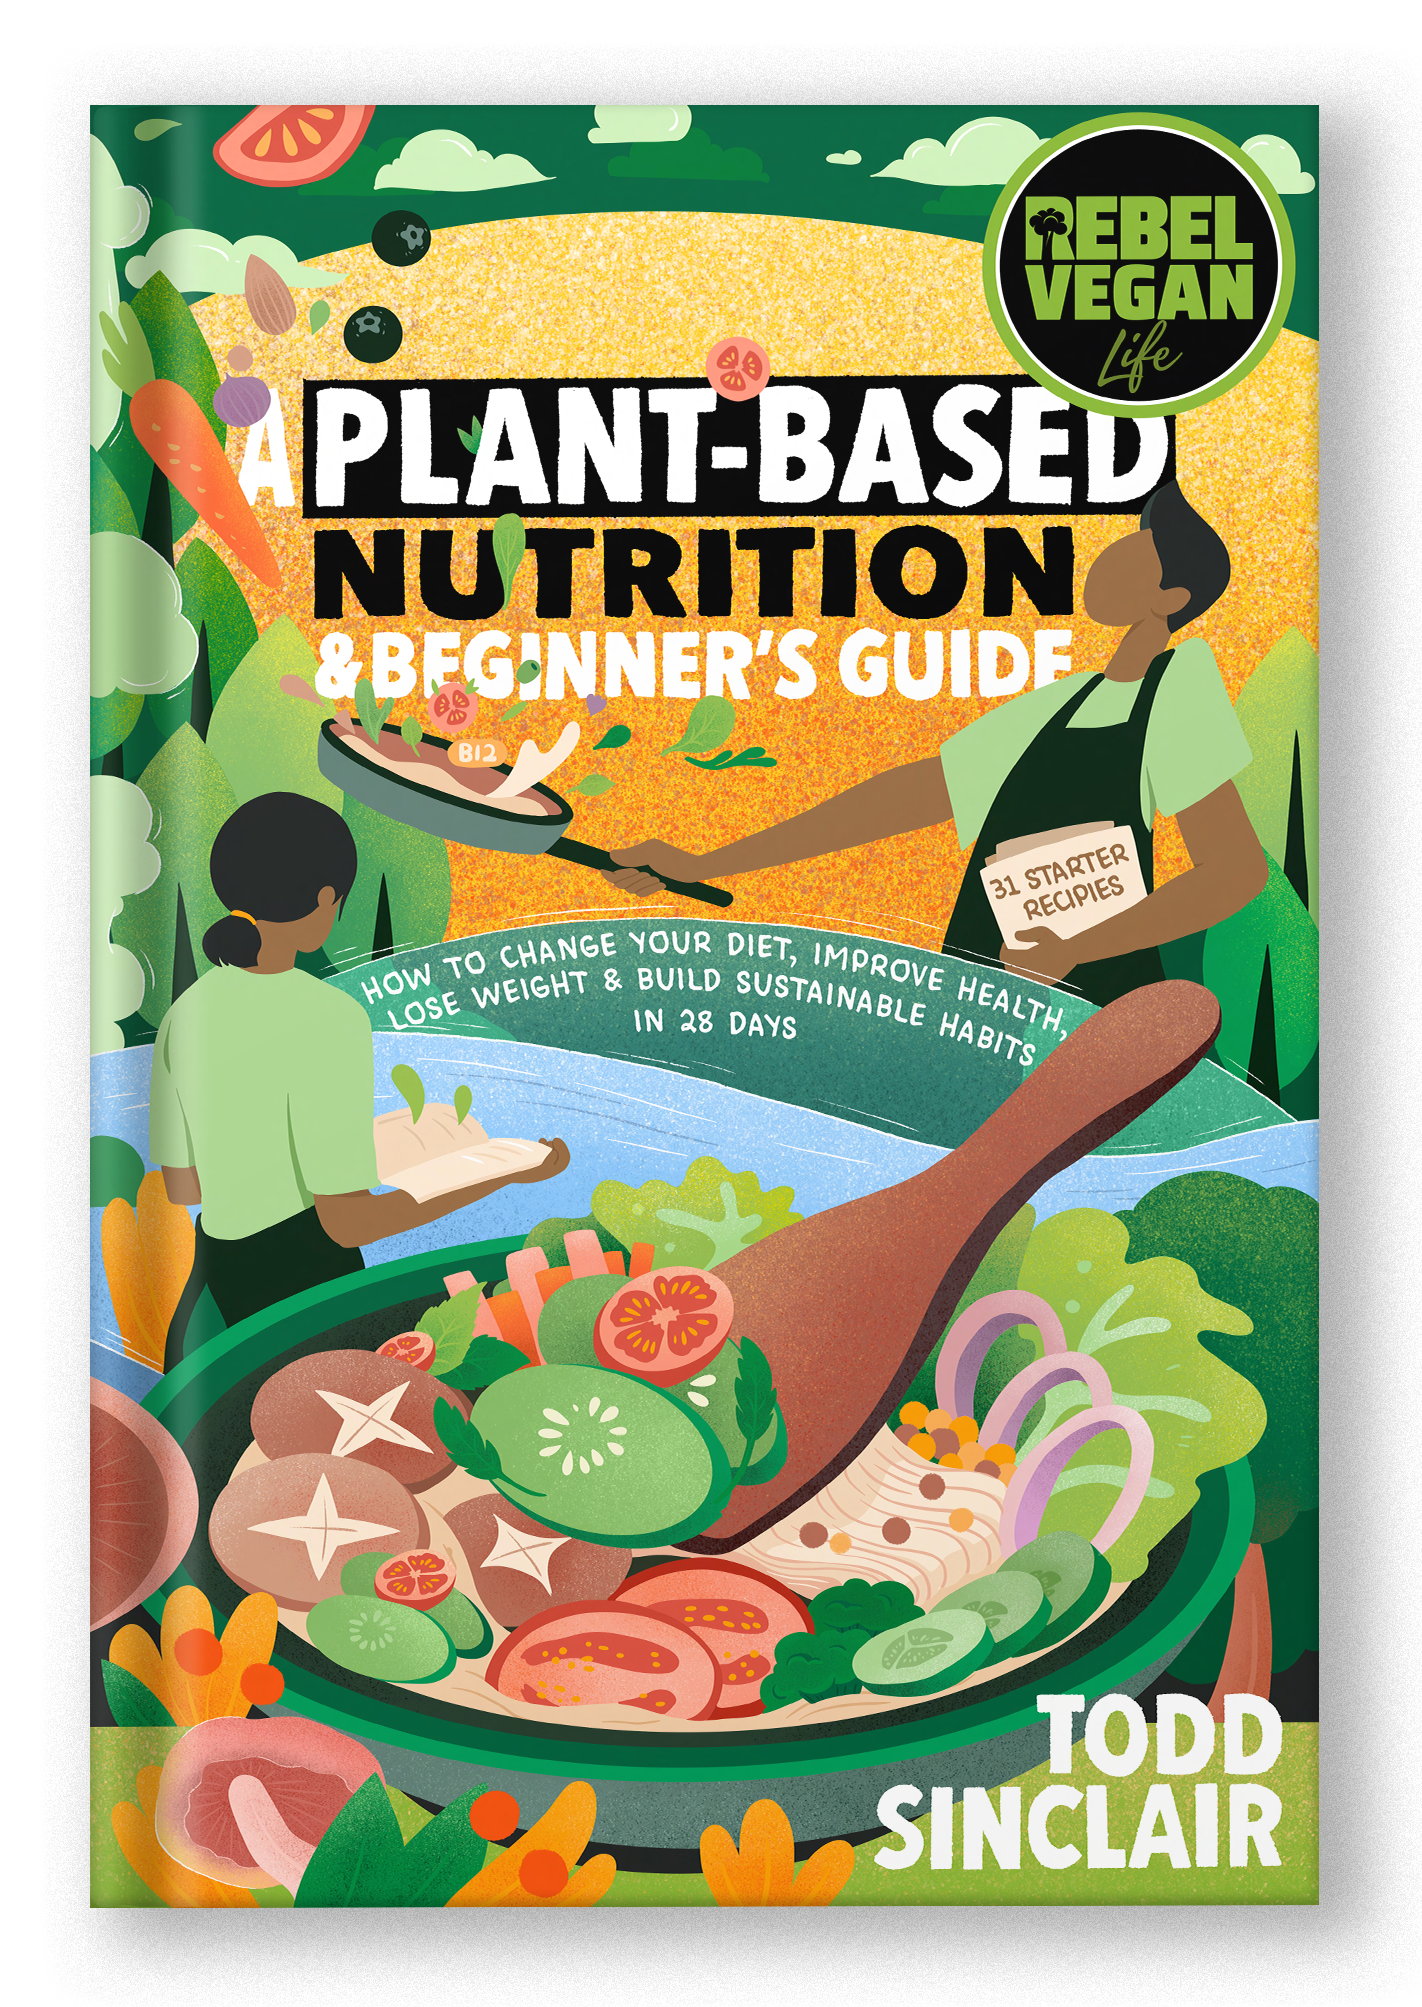 Rebel Vegan Life: Plant-Based Nutrition & Beginner's Guide